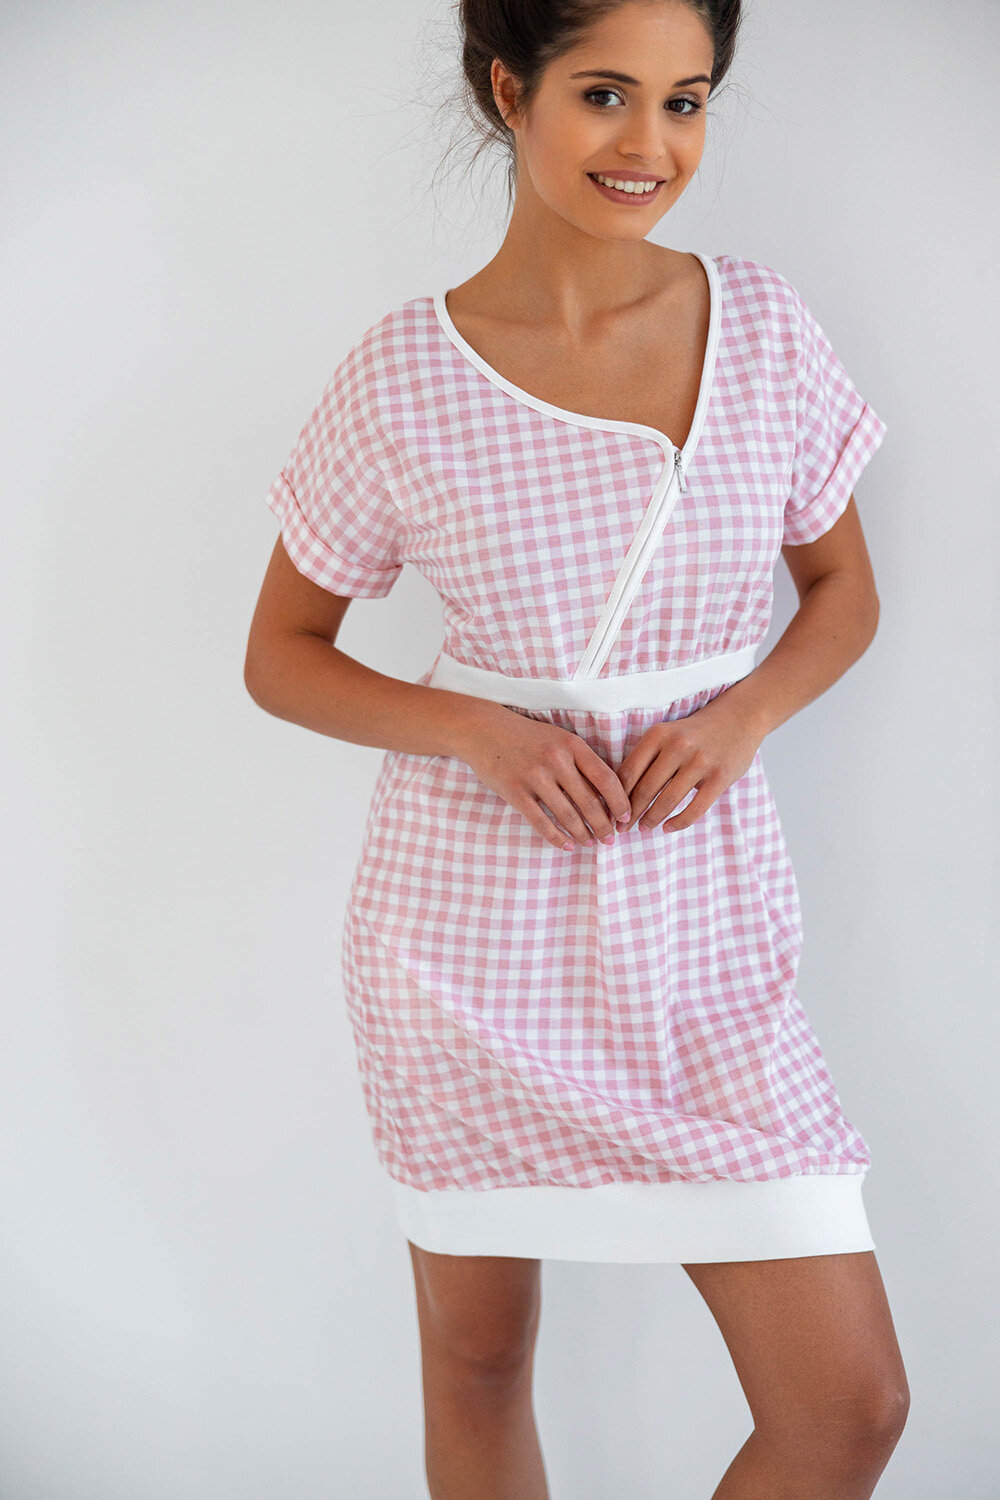 Сорочка женская SENSIS Annika, розовый, хлопок 100% (Размер: S) - фотография № 7